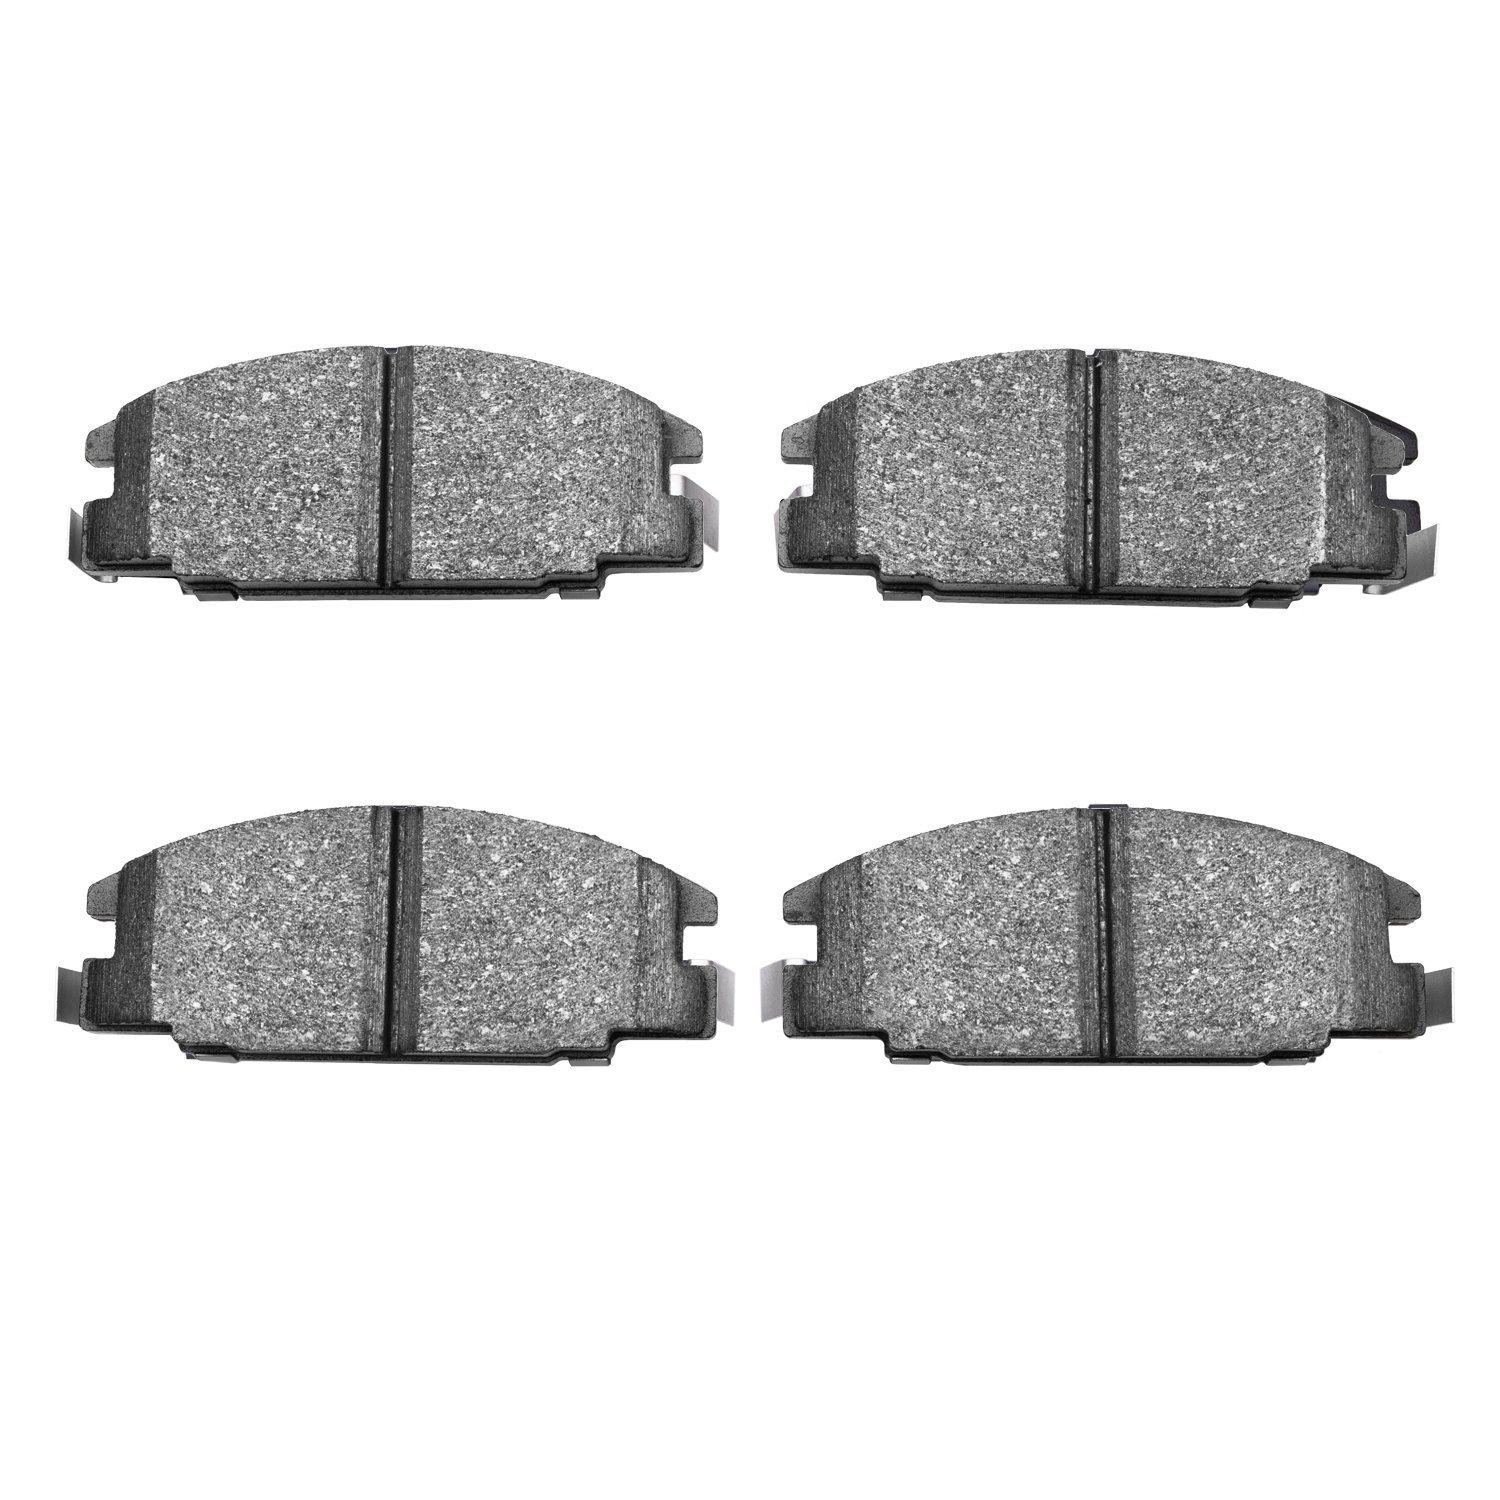 Ceramic Brake Pads, 1986-2006 Fits Multiple Makes/Models, Position: Front